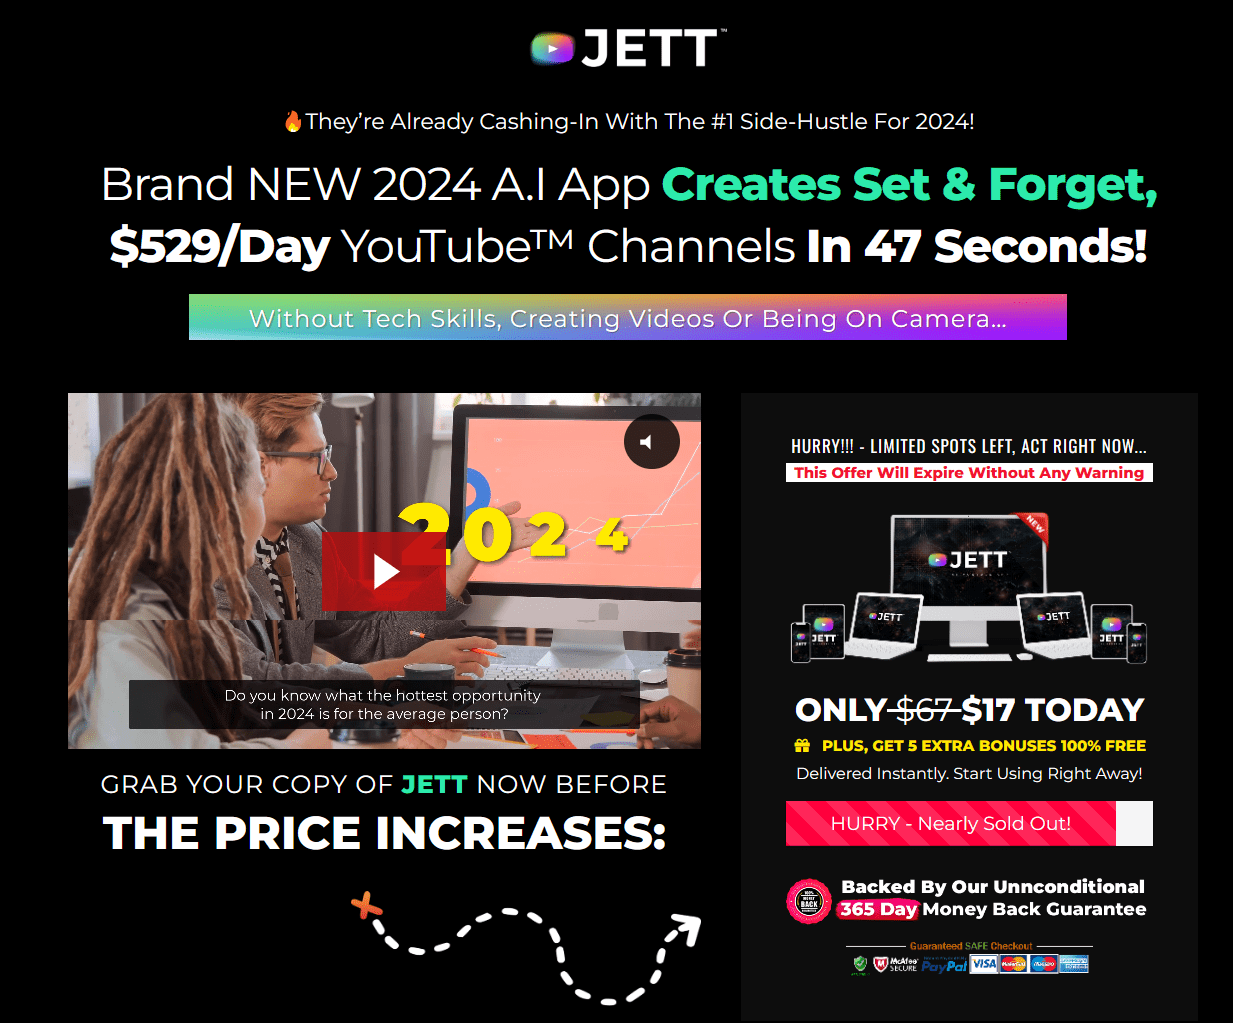 Jett App Review